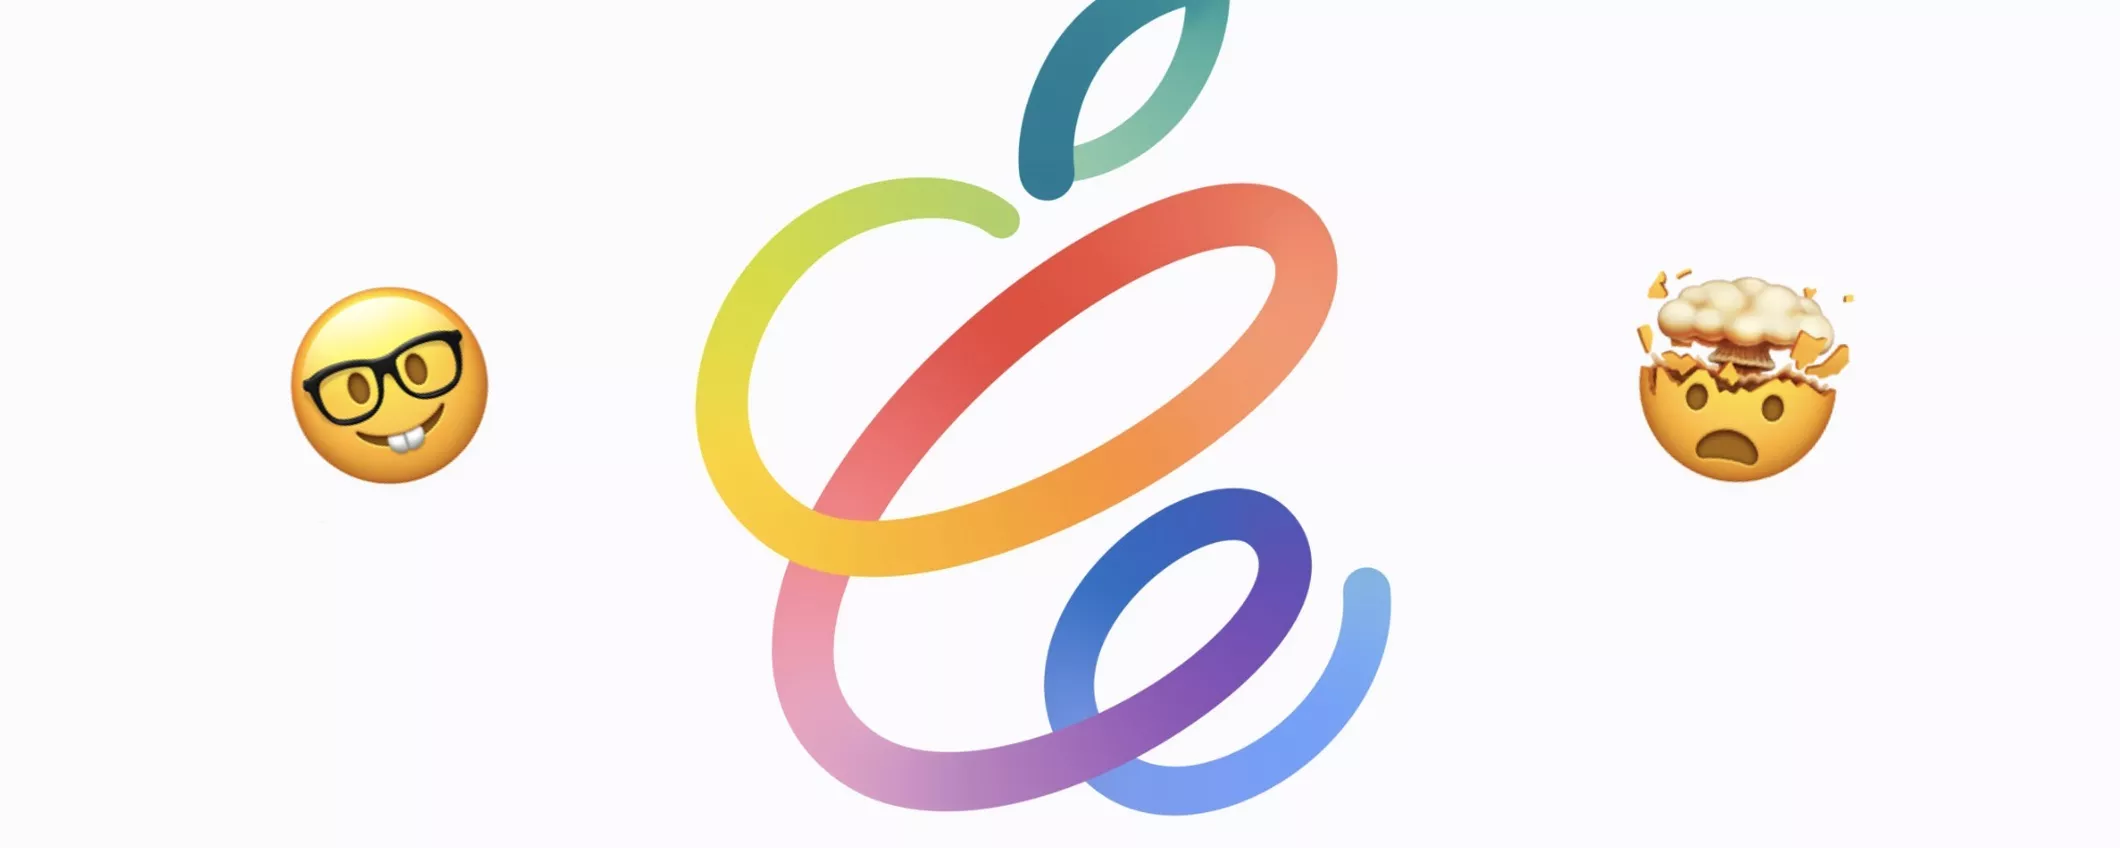 Evento Apple Spring Loaded: 10 sorprendenti anticipazioni